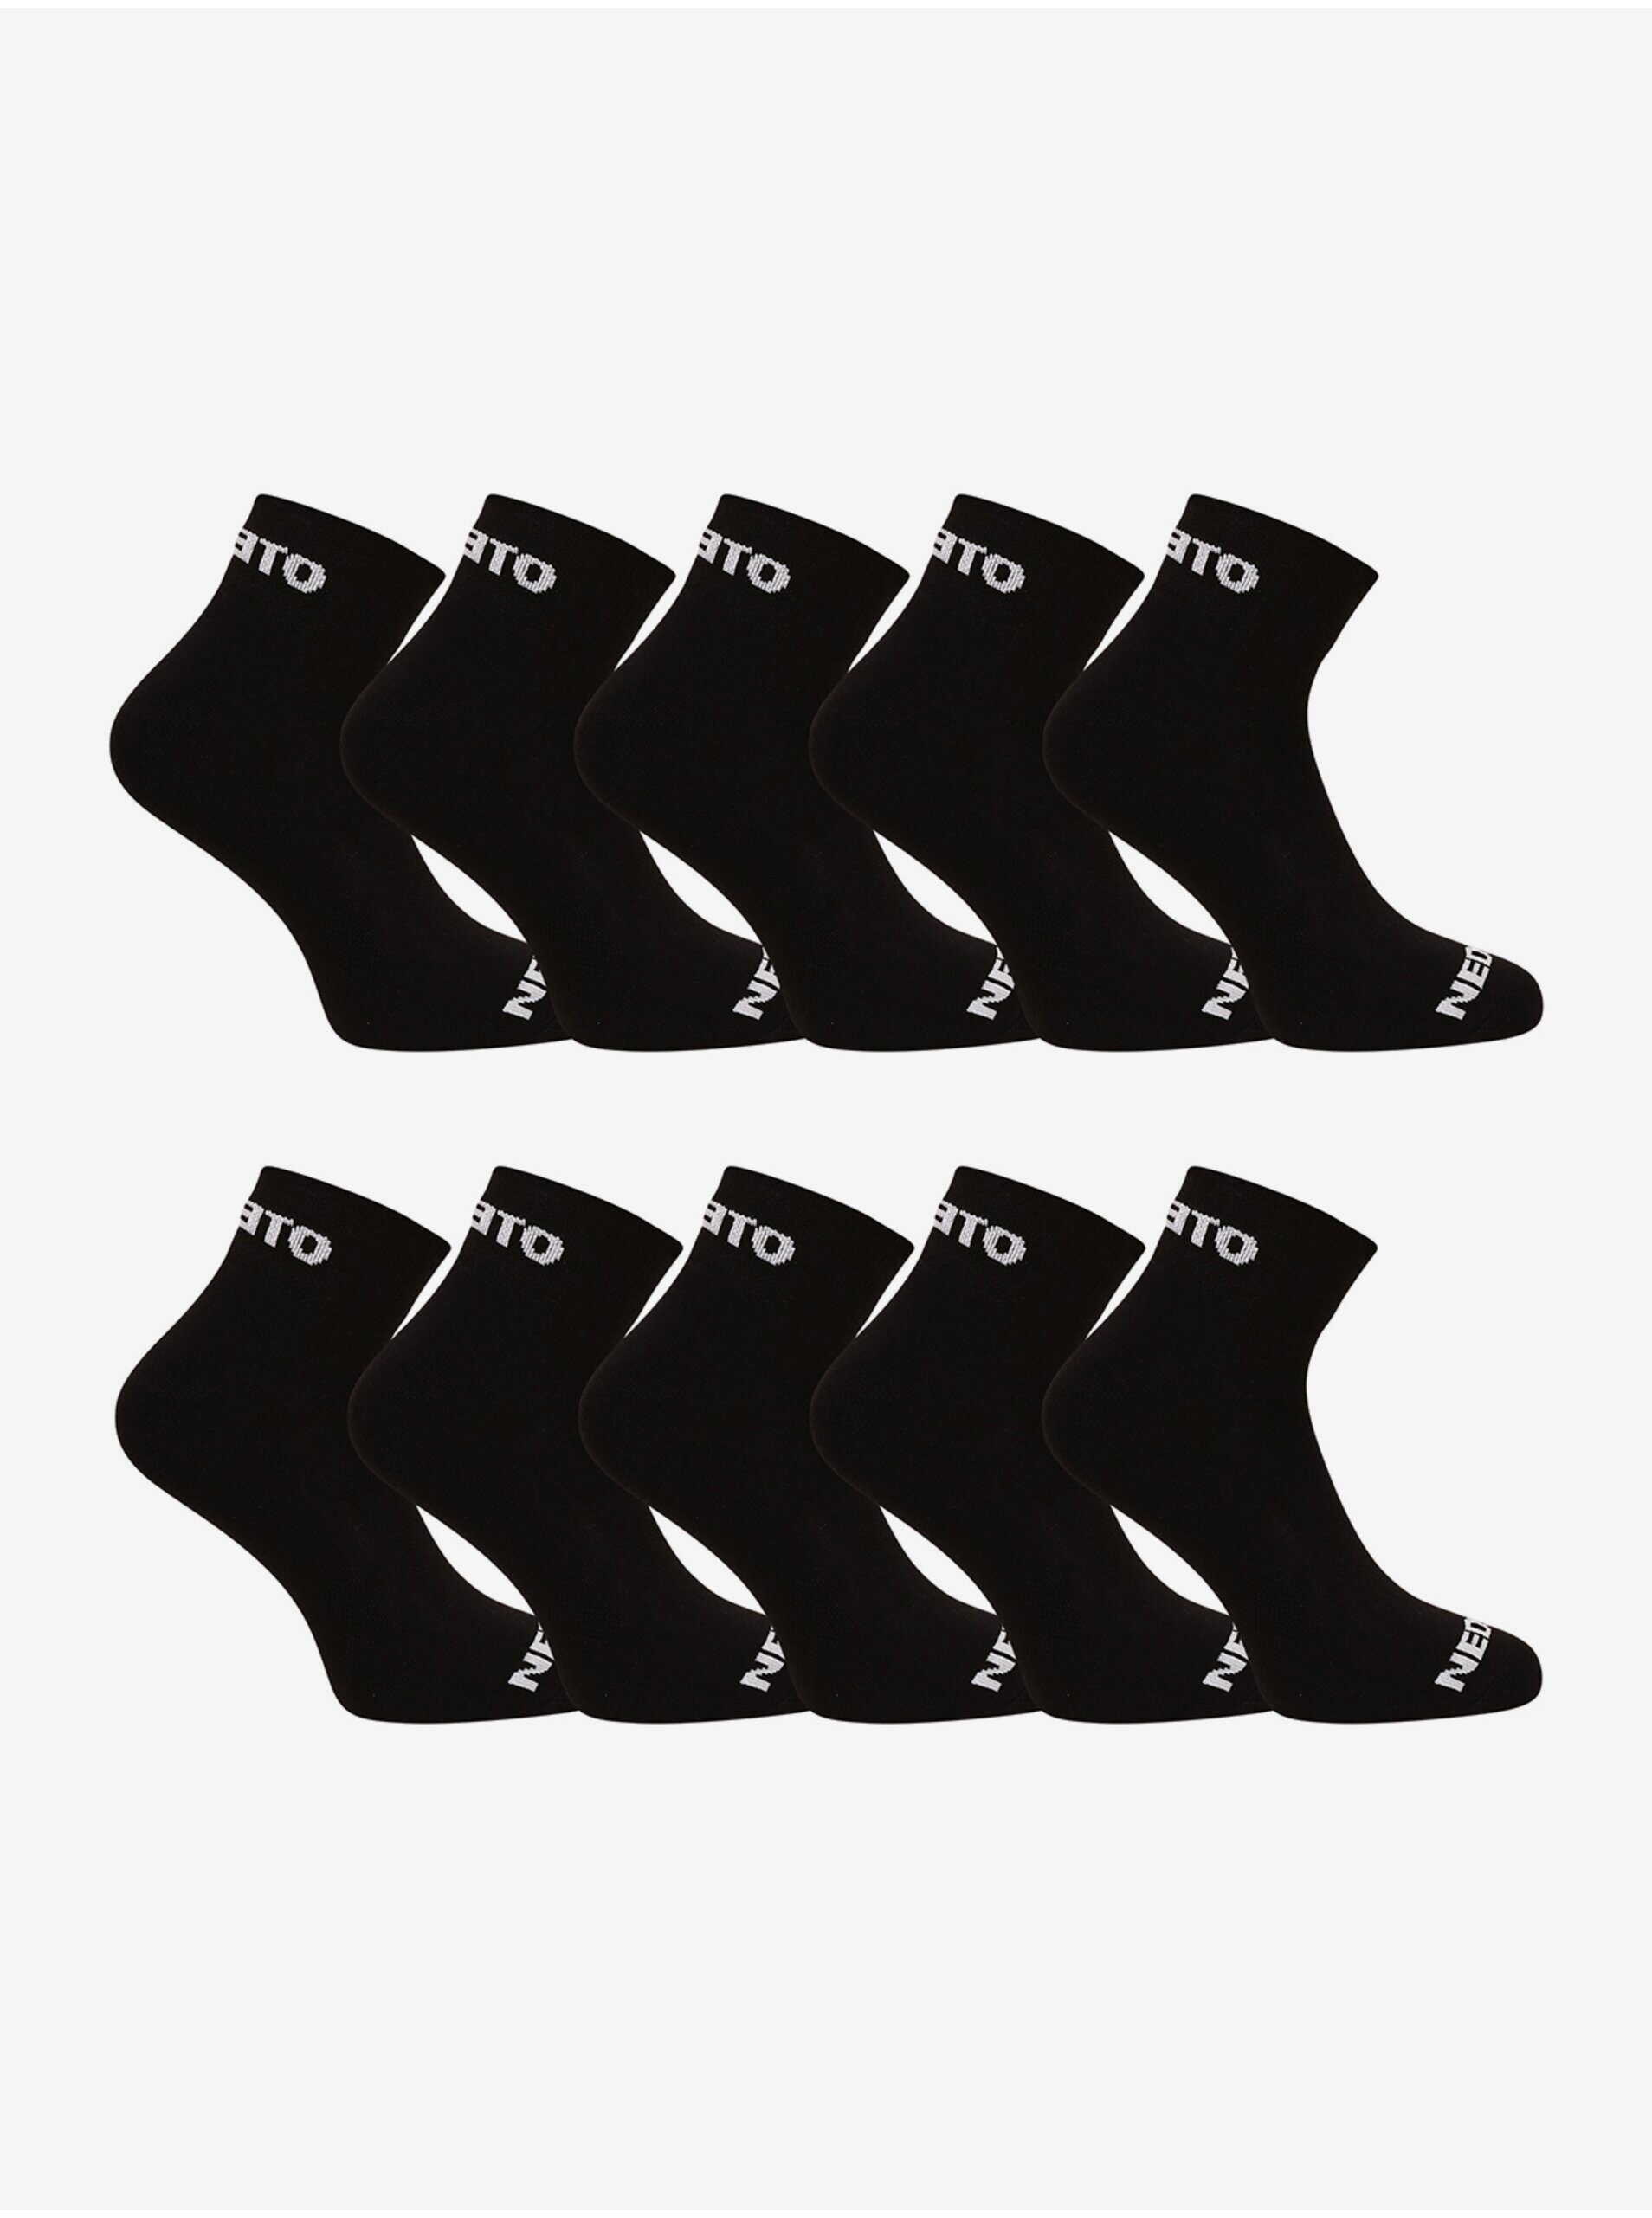 E-shop Súprava desiatich párov ponožiek v čiernej farbe Nedeto